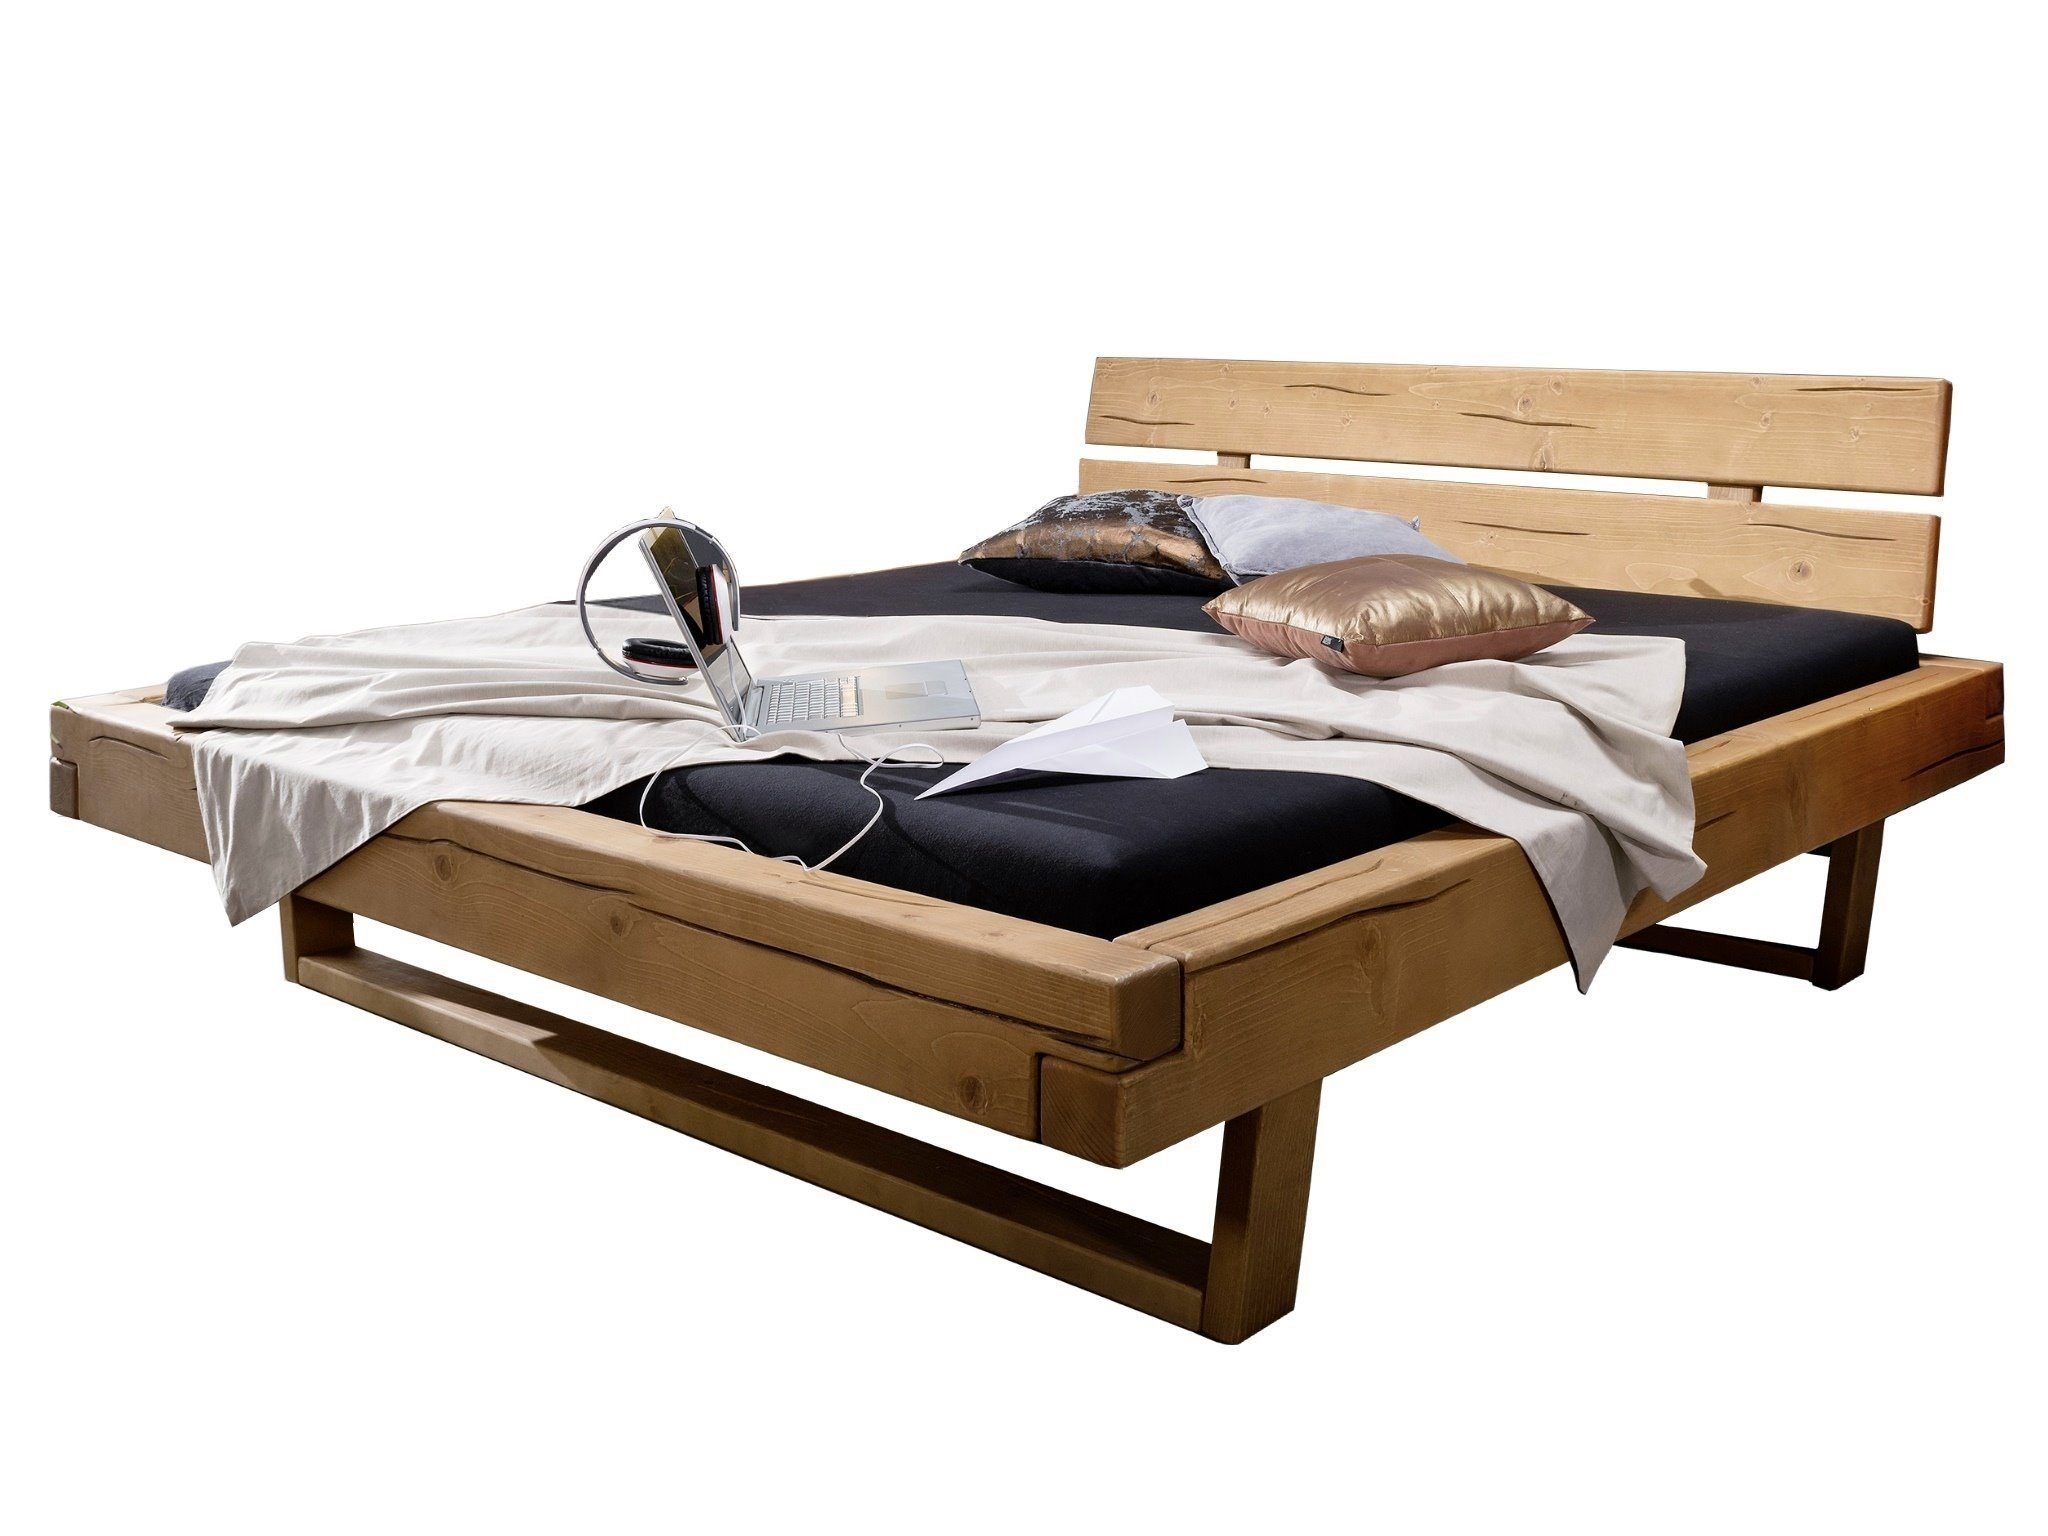 SAM® Holzbett Ambon, hohes Kopfteil, honigfarben, Fichtenholz massiv,  Balkenbett, von 140 cm bis 200 cm Breite erhältlich